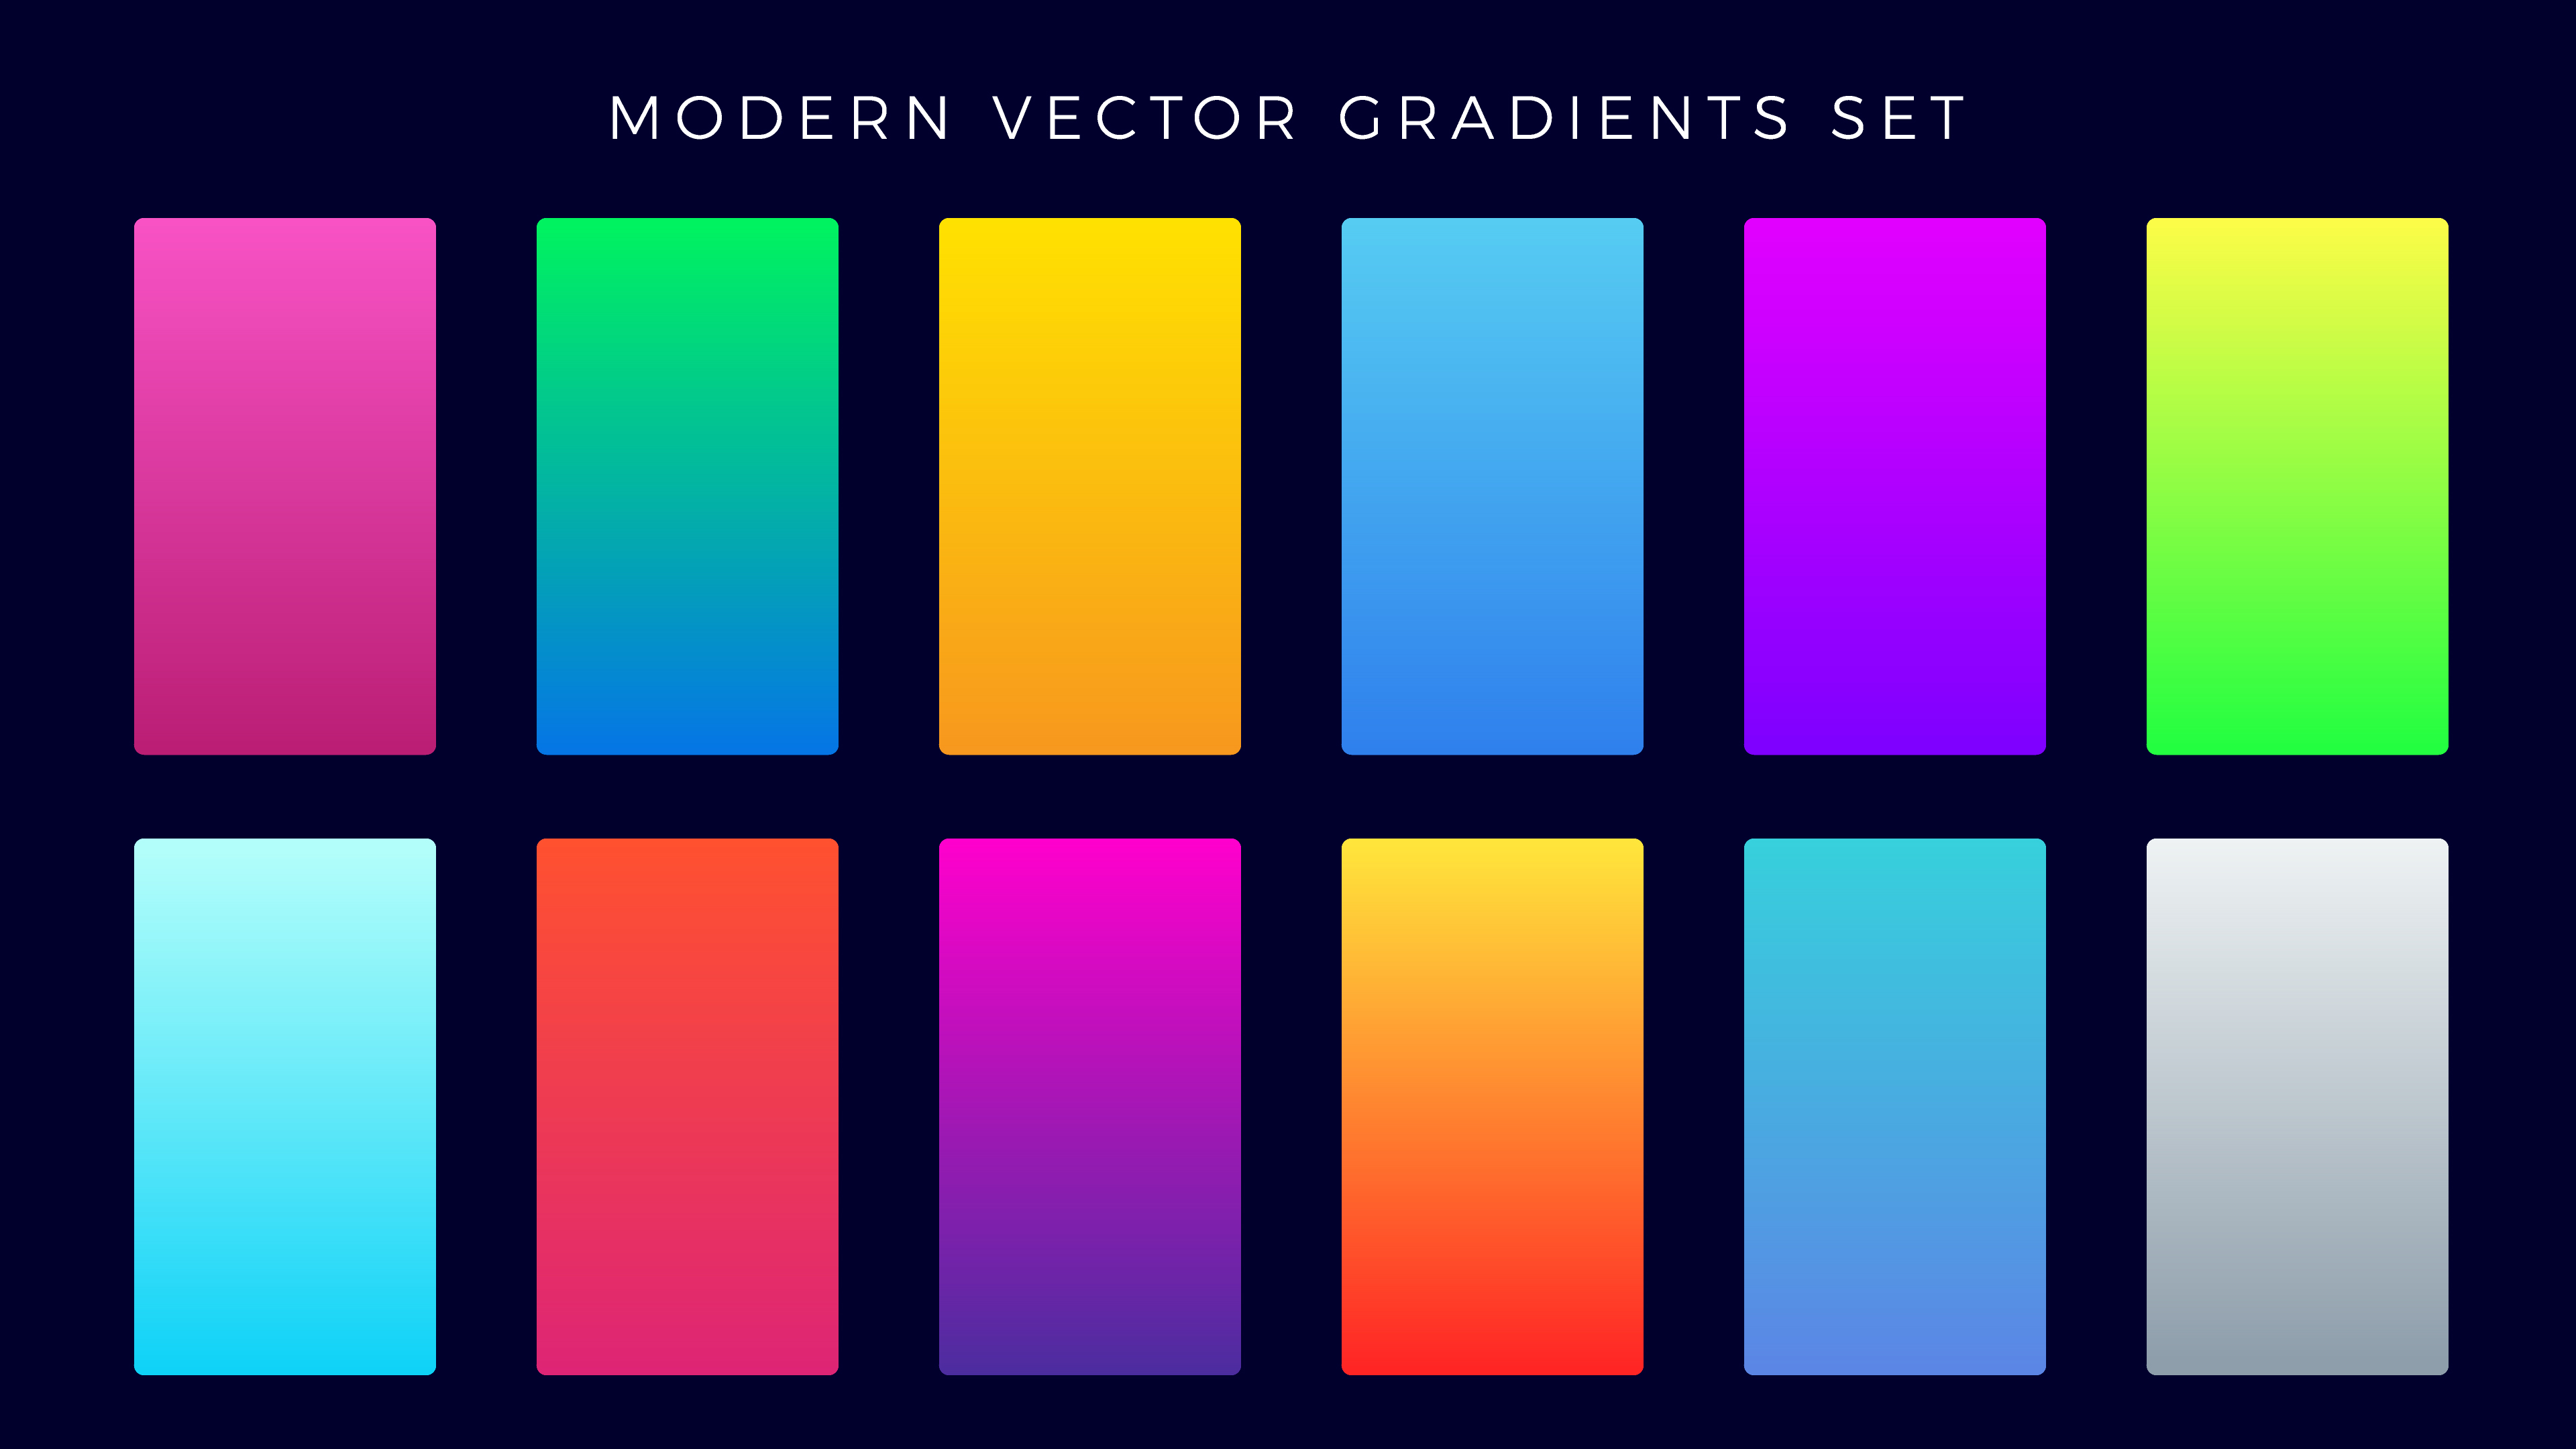 Modern Gradient Set 830374 Vector Art At Vecteezy